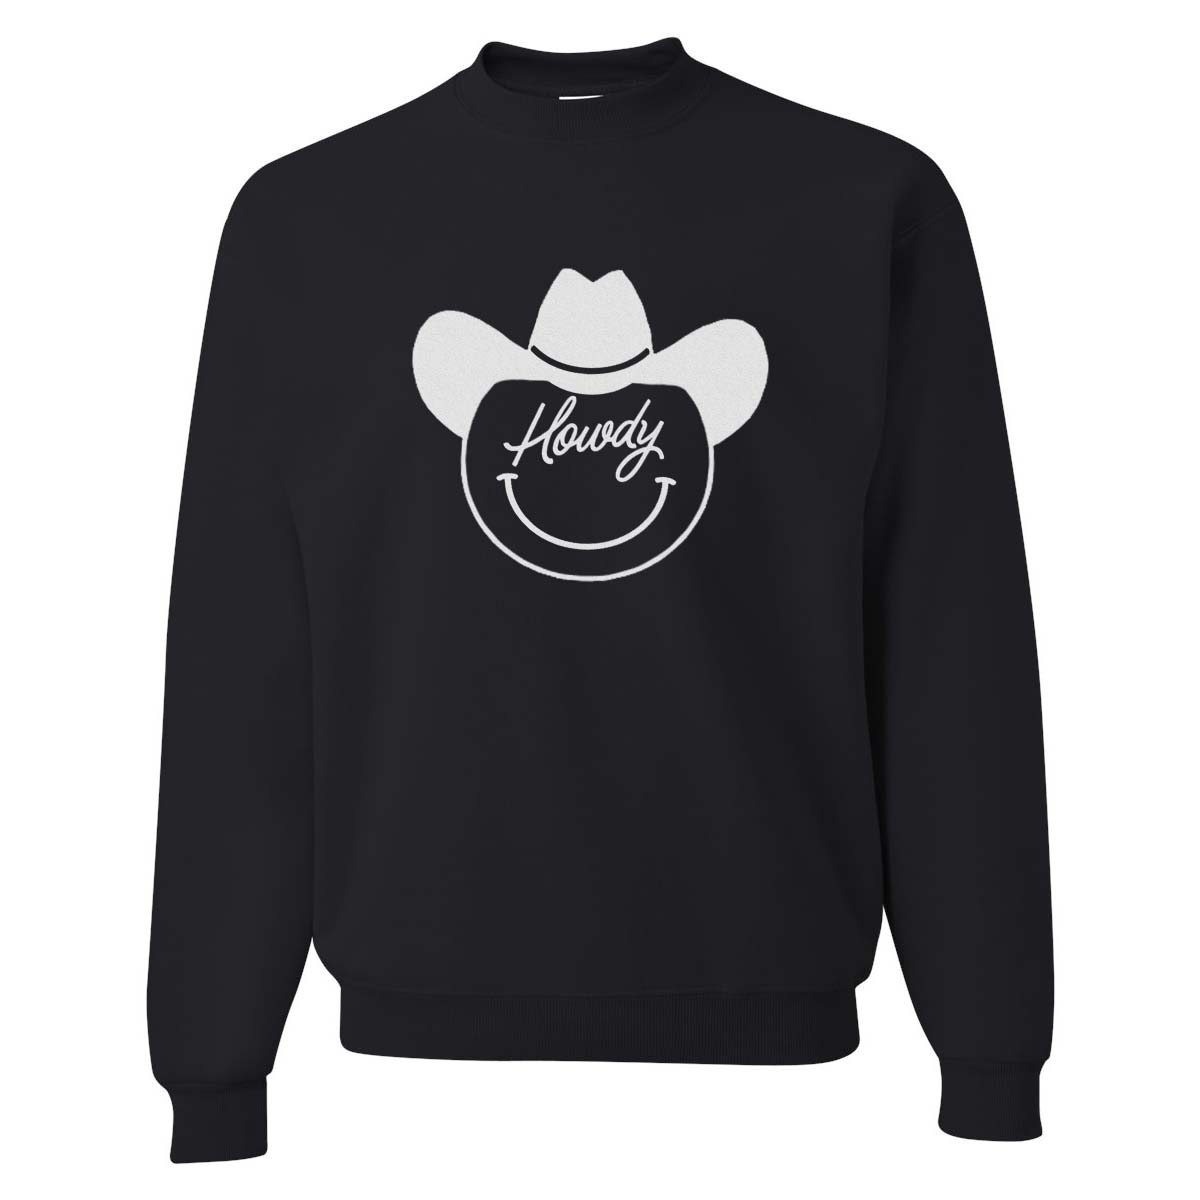 Howdy Cowboy Sweatshirt